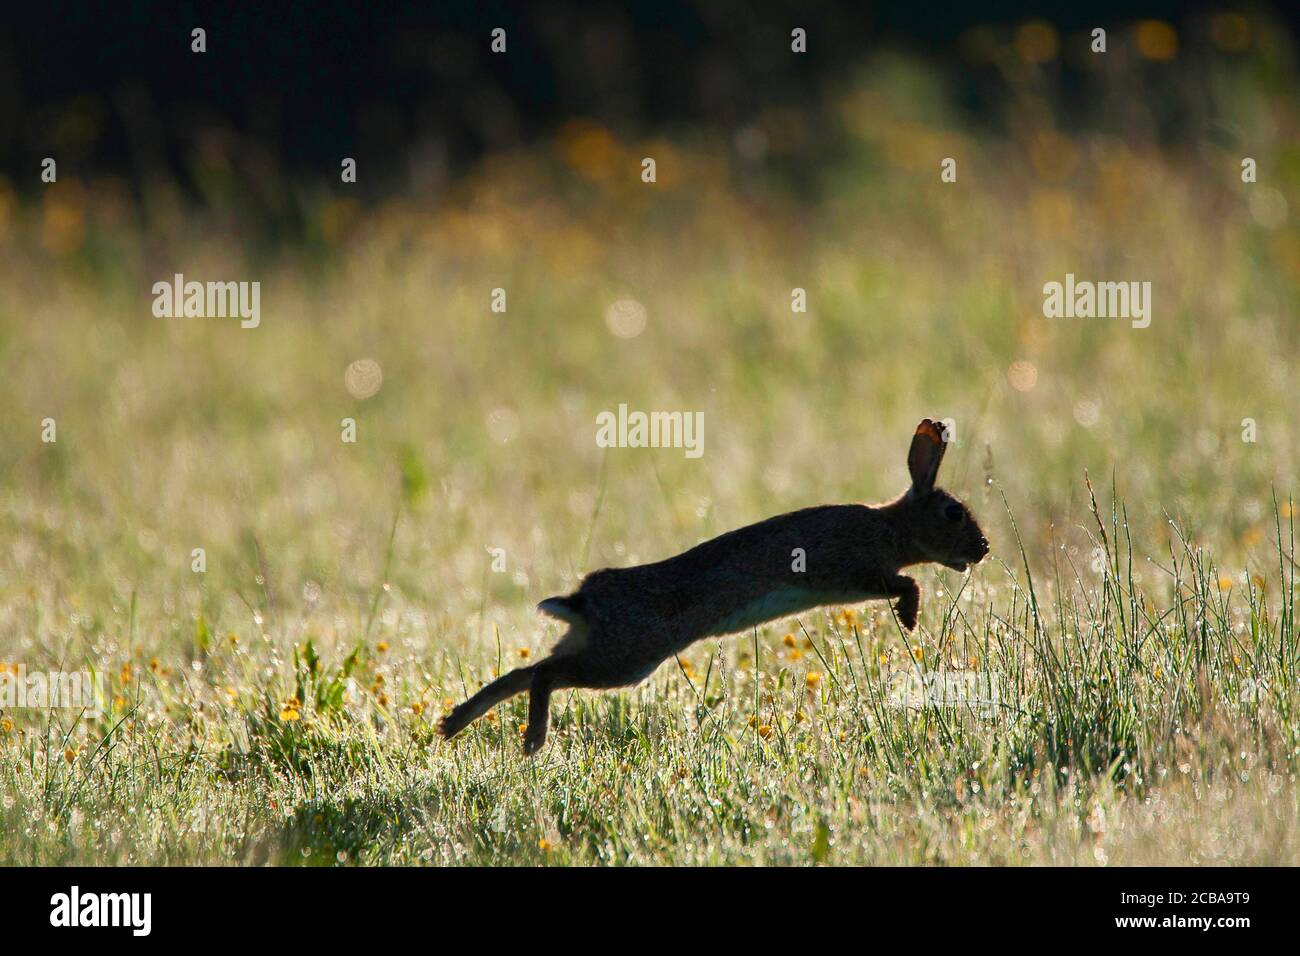 Lapin européen (Oryctolagus cuniculus), juvénile en saut sur l'herbe le matin, vue latérale, Belgique Banque D'Images